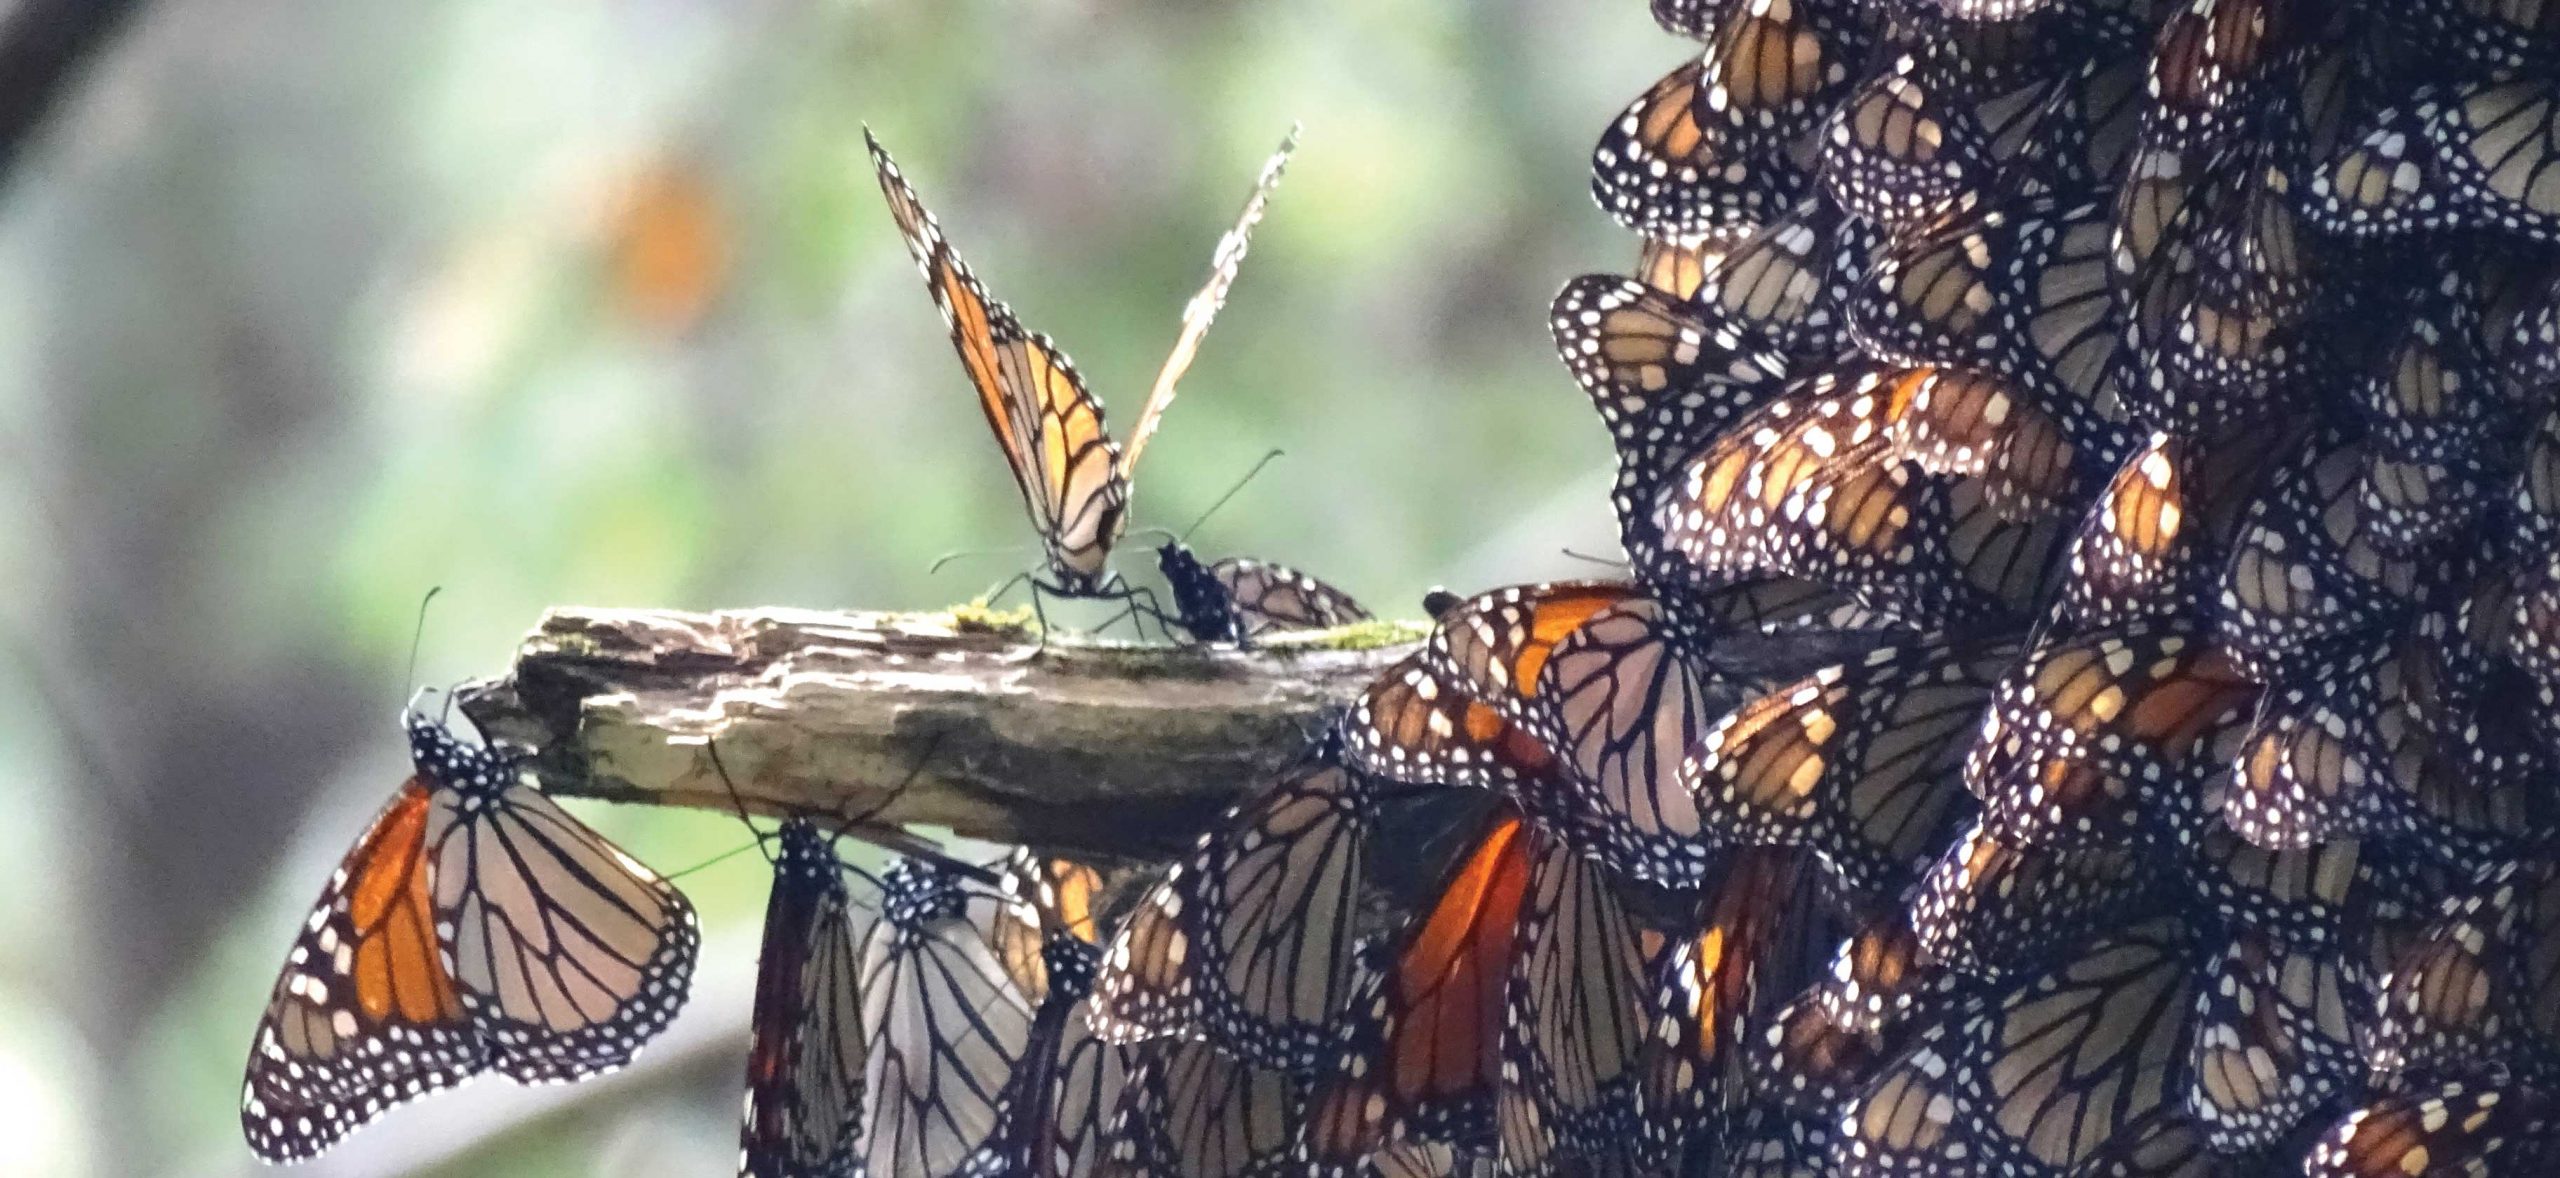 Mariposa: Metamorphosis in Mexico